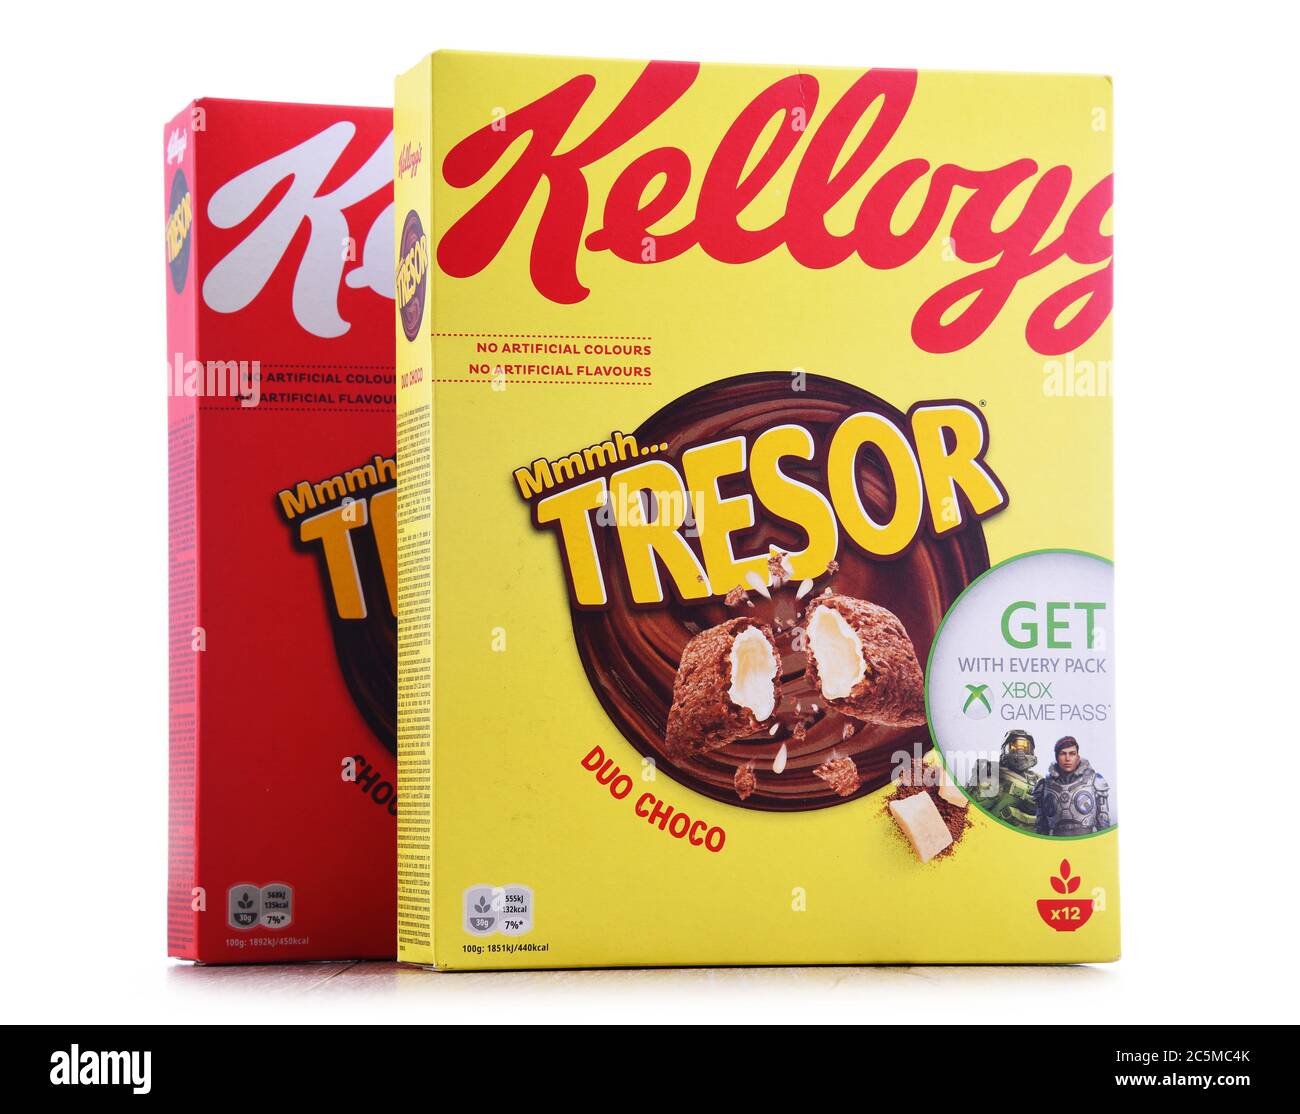 Kellogg's Mmmh  TRESOR - Duo Choco 